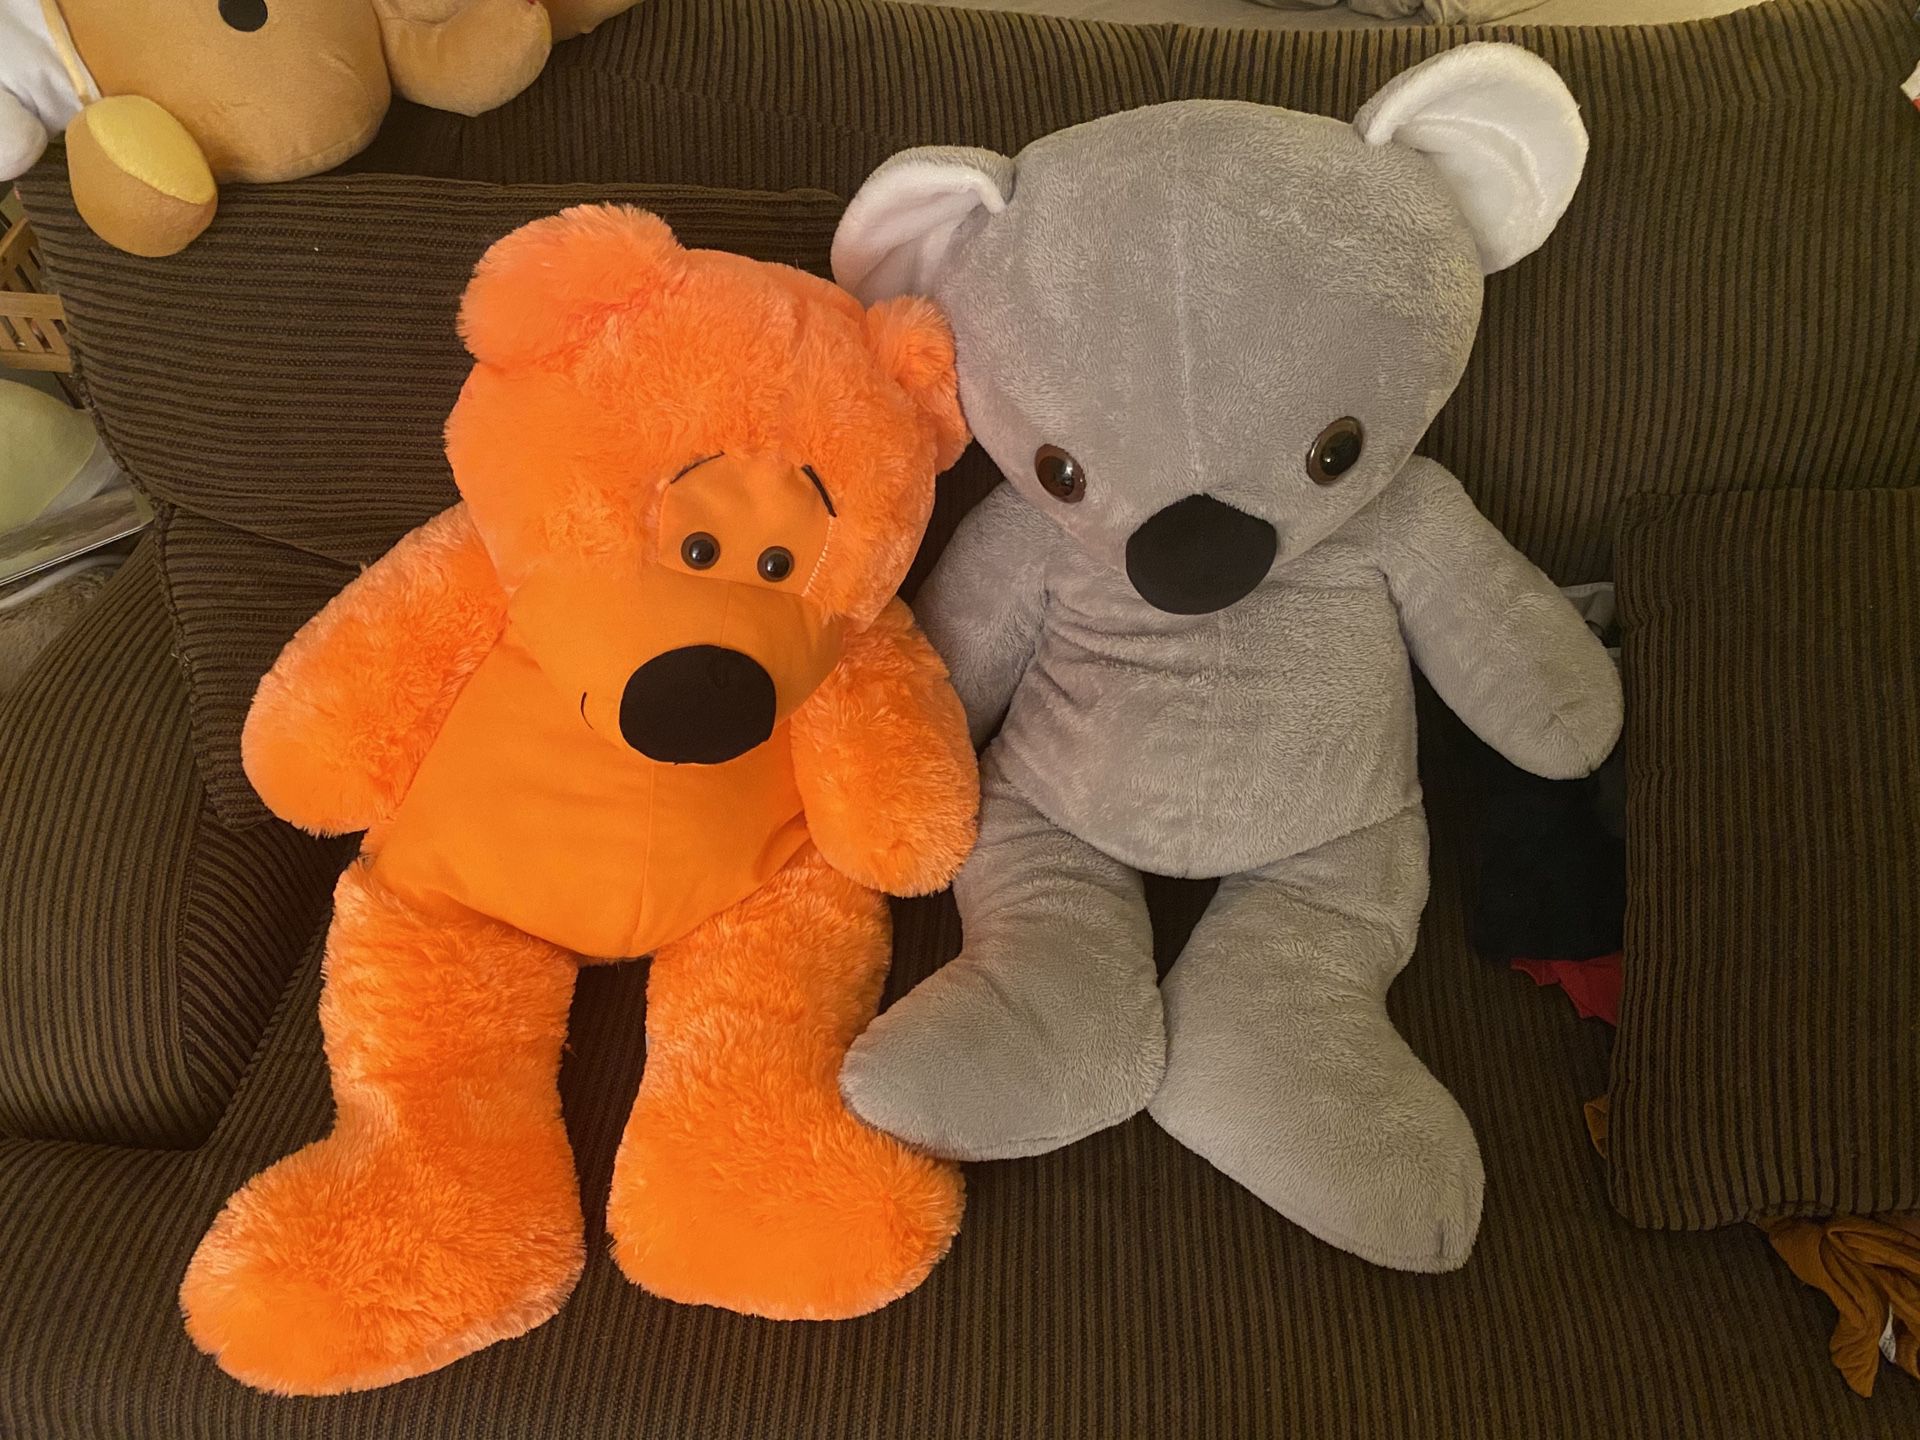 Giant toys plush bear & kola